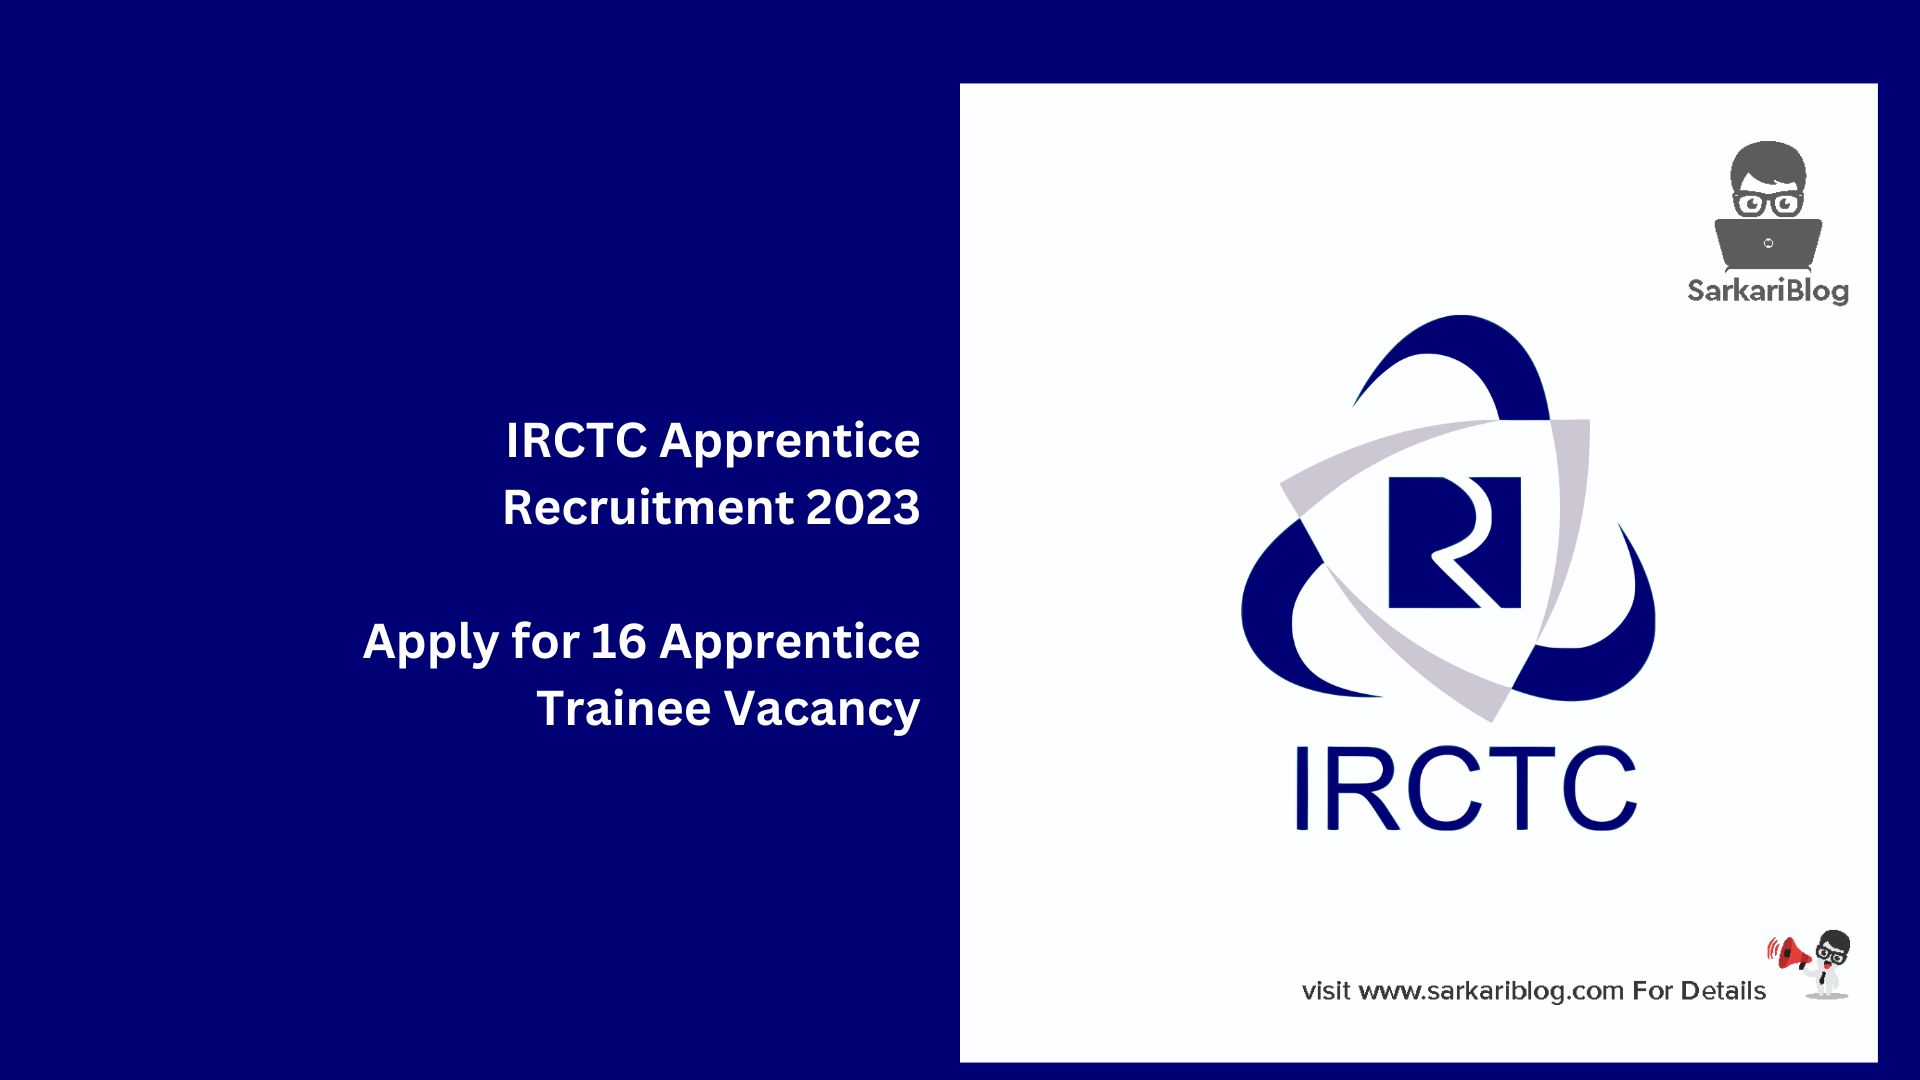 IRCTC Apprentice Recruitment 2023